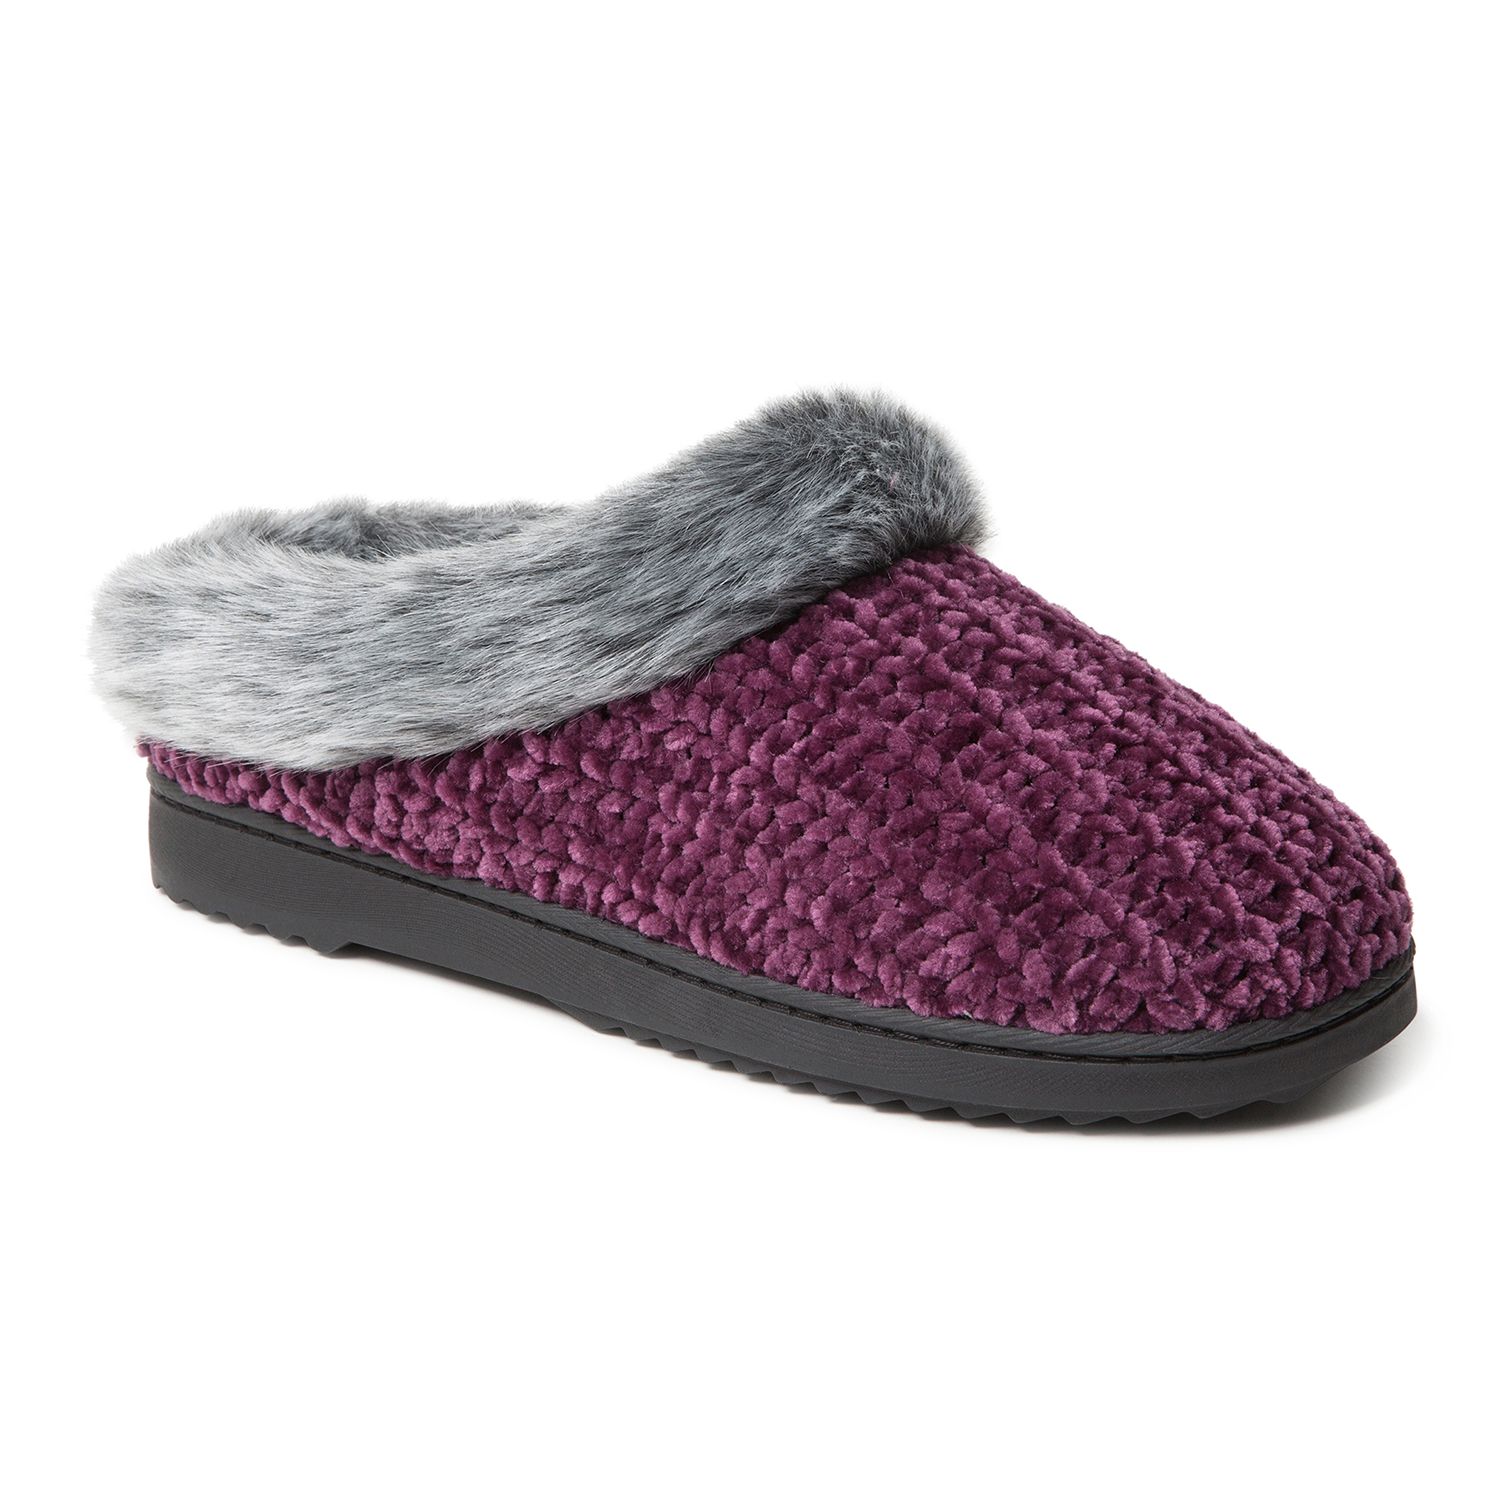 women's dearfoams chenille knit clog slippers